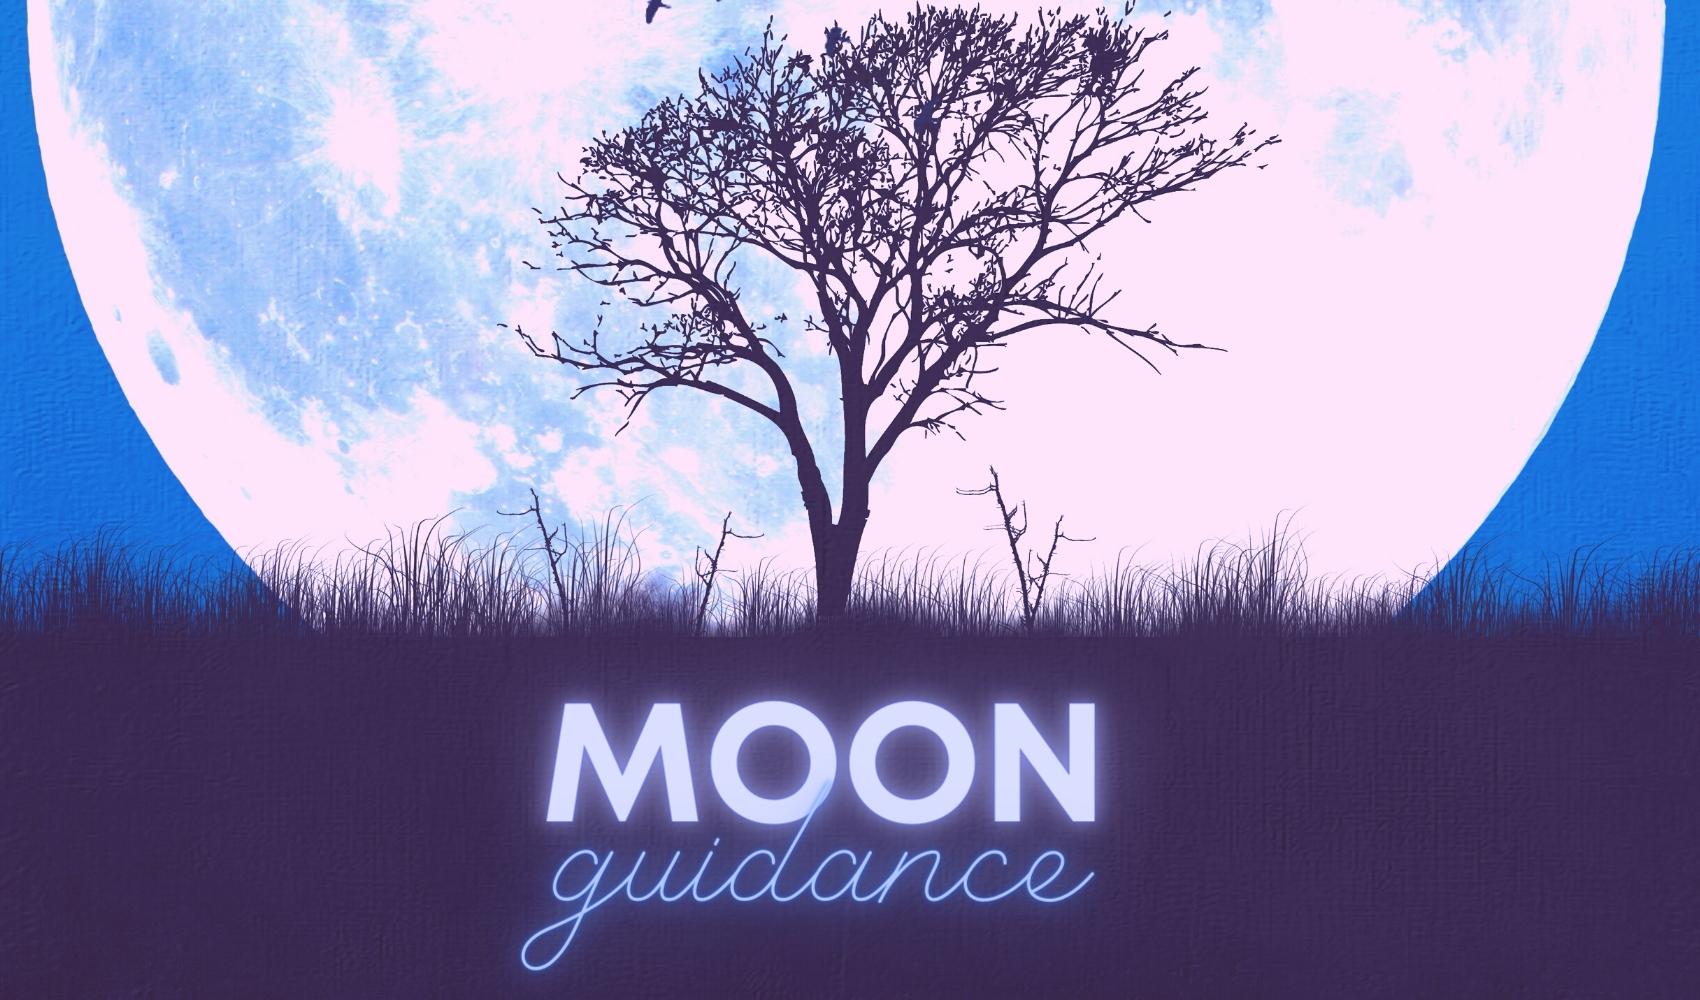 Moon guidance card guidance